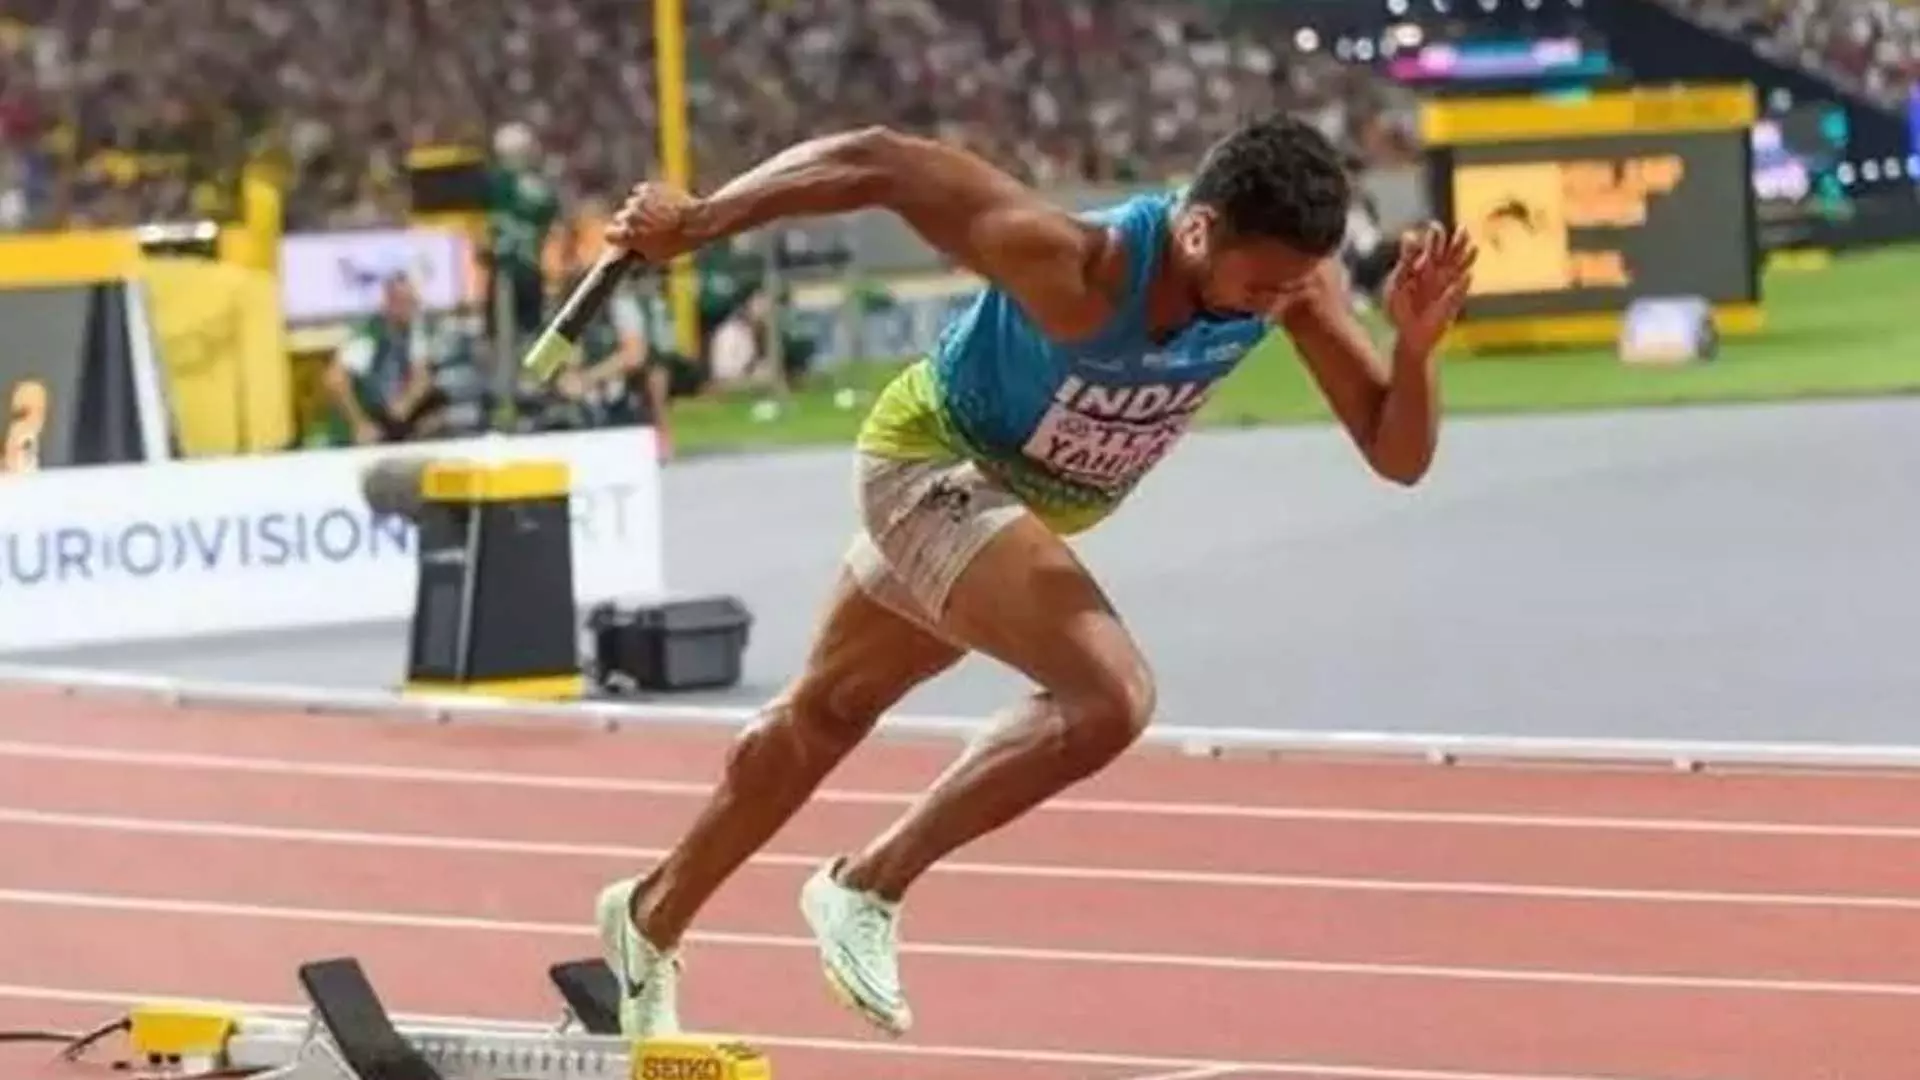 भारतीय पुरुष, महिला 4x400 मीटर टीमों ने एशियाई रिले चैम्पियनशिप में रजत पदक सुरक्षित किए